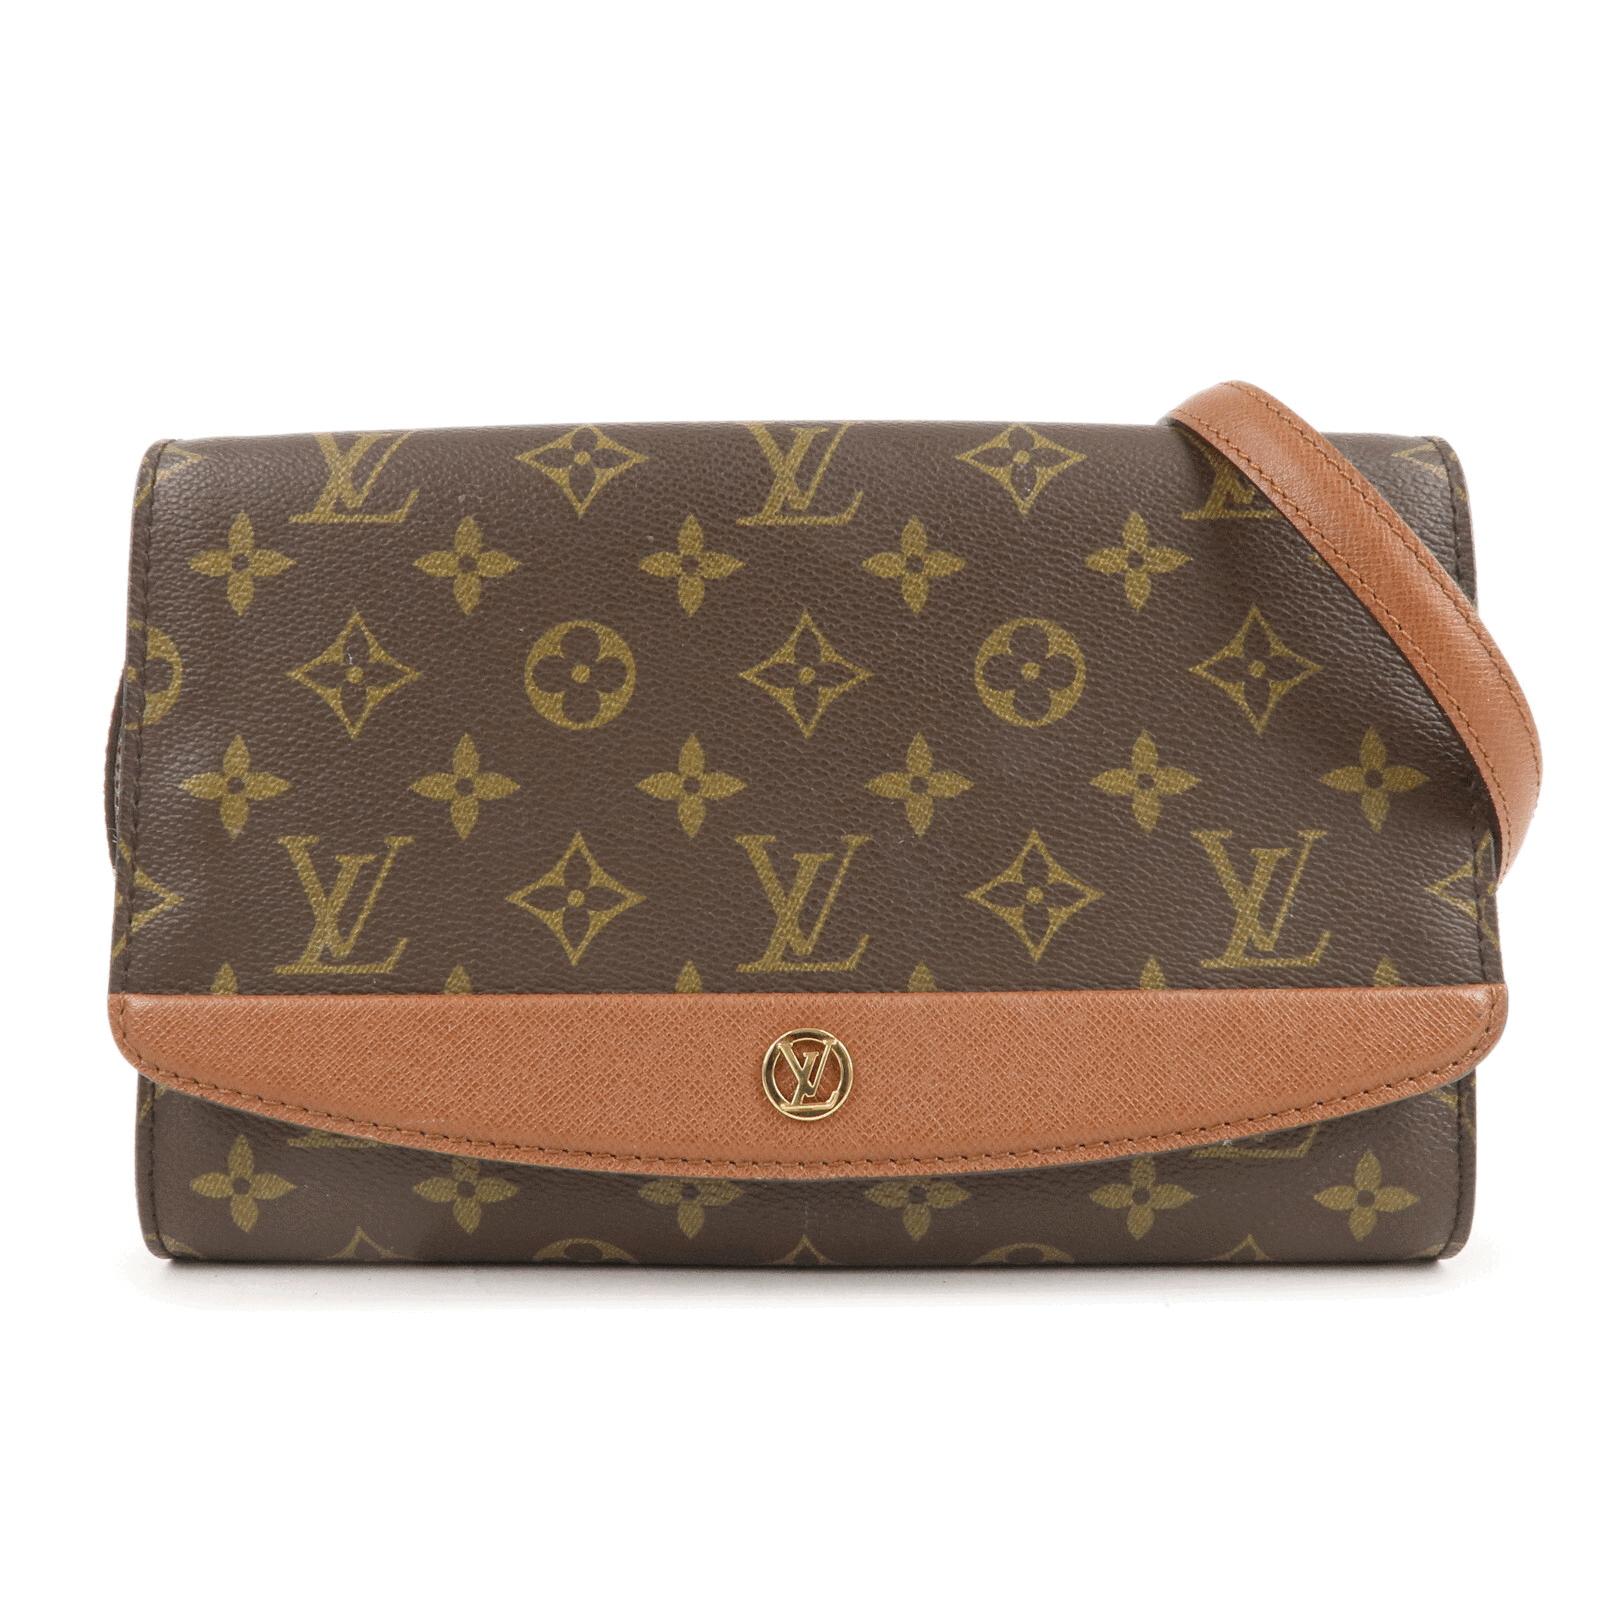 The Luxuryist  Louis vuitton handbags, Vintage louis vuitton handbags, Louis  vuitton bag